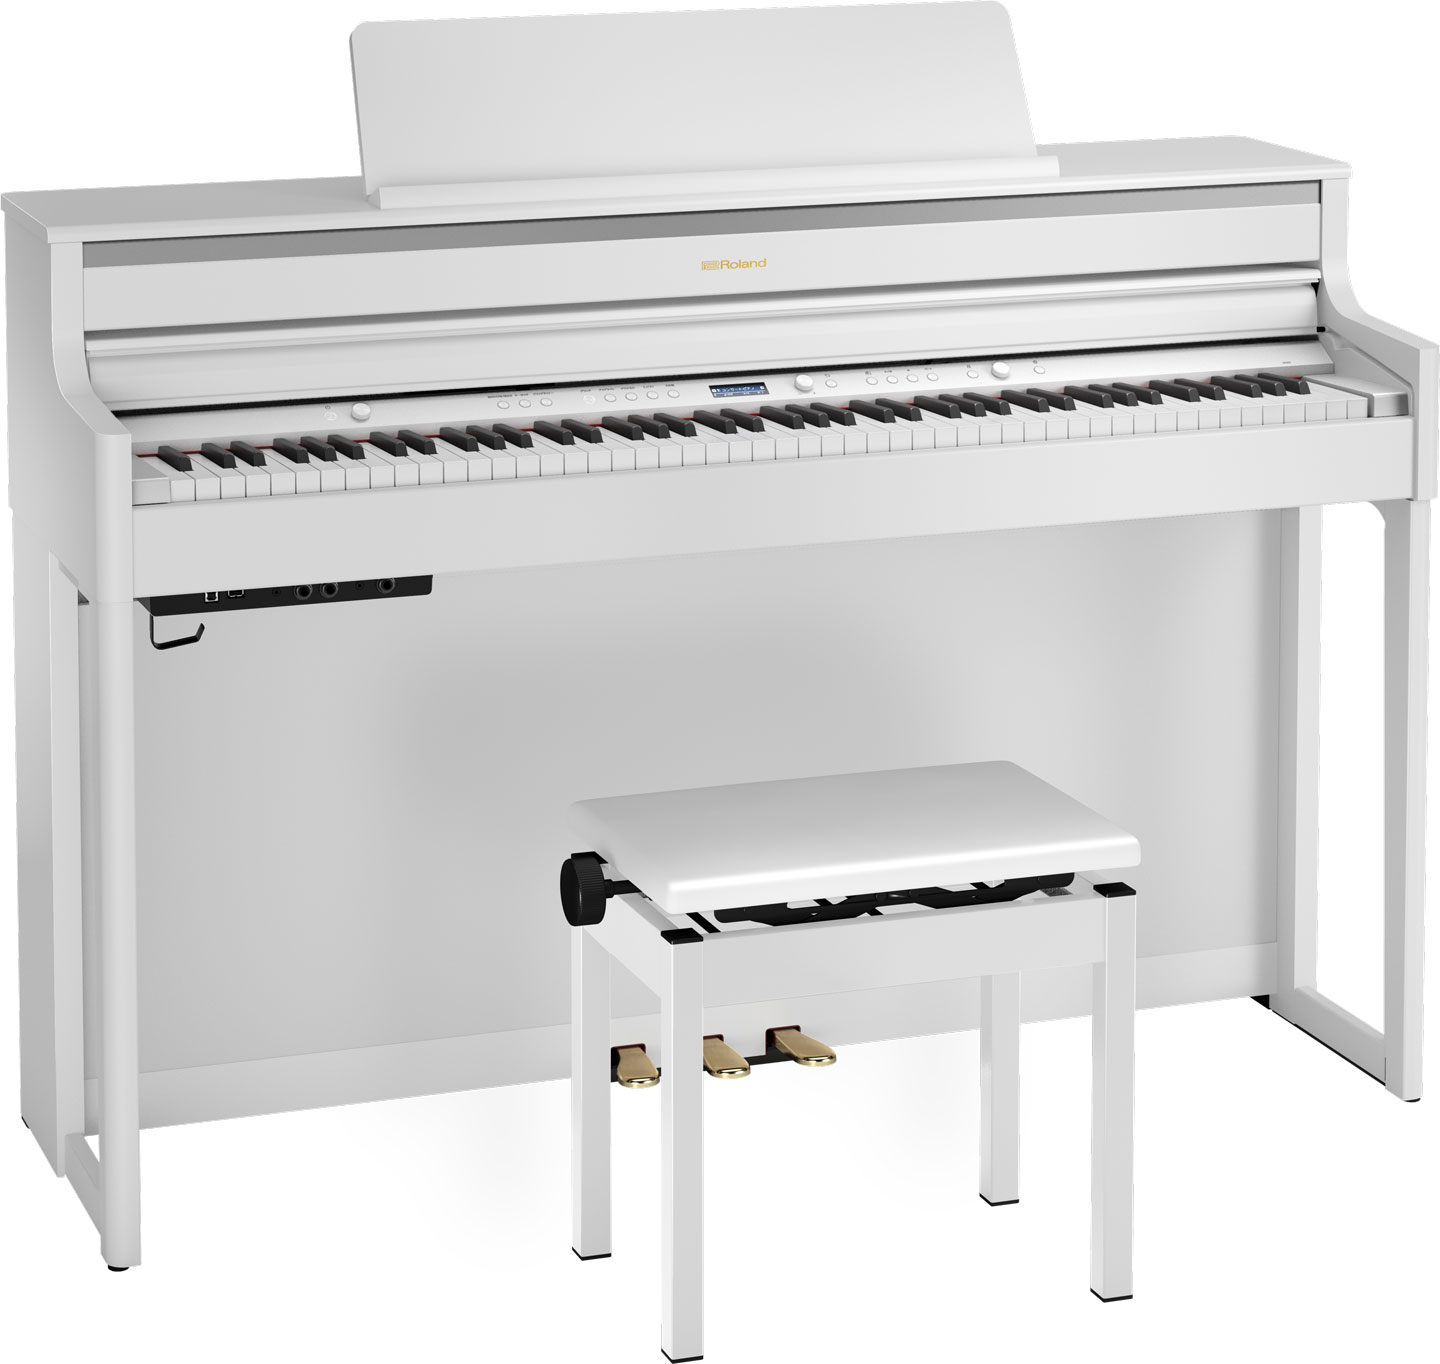 Rolandのホームデジタルピアノ HP700series「HP704/HP702」のご紹介 